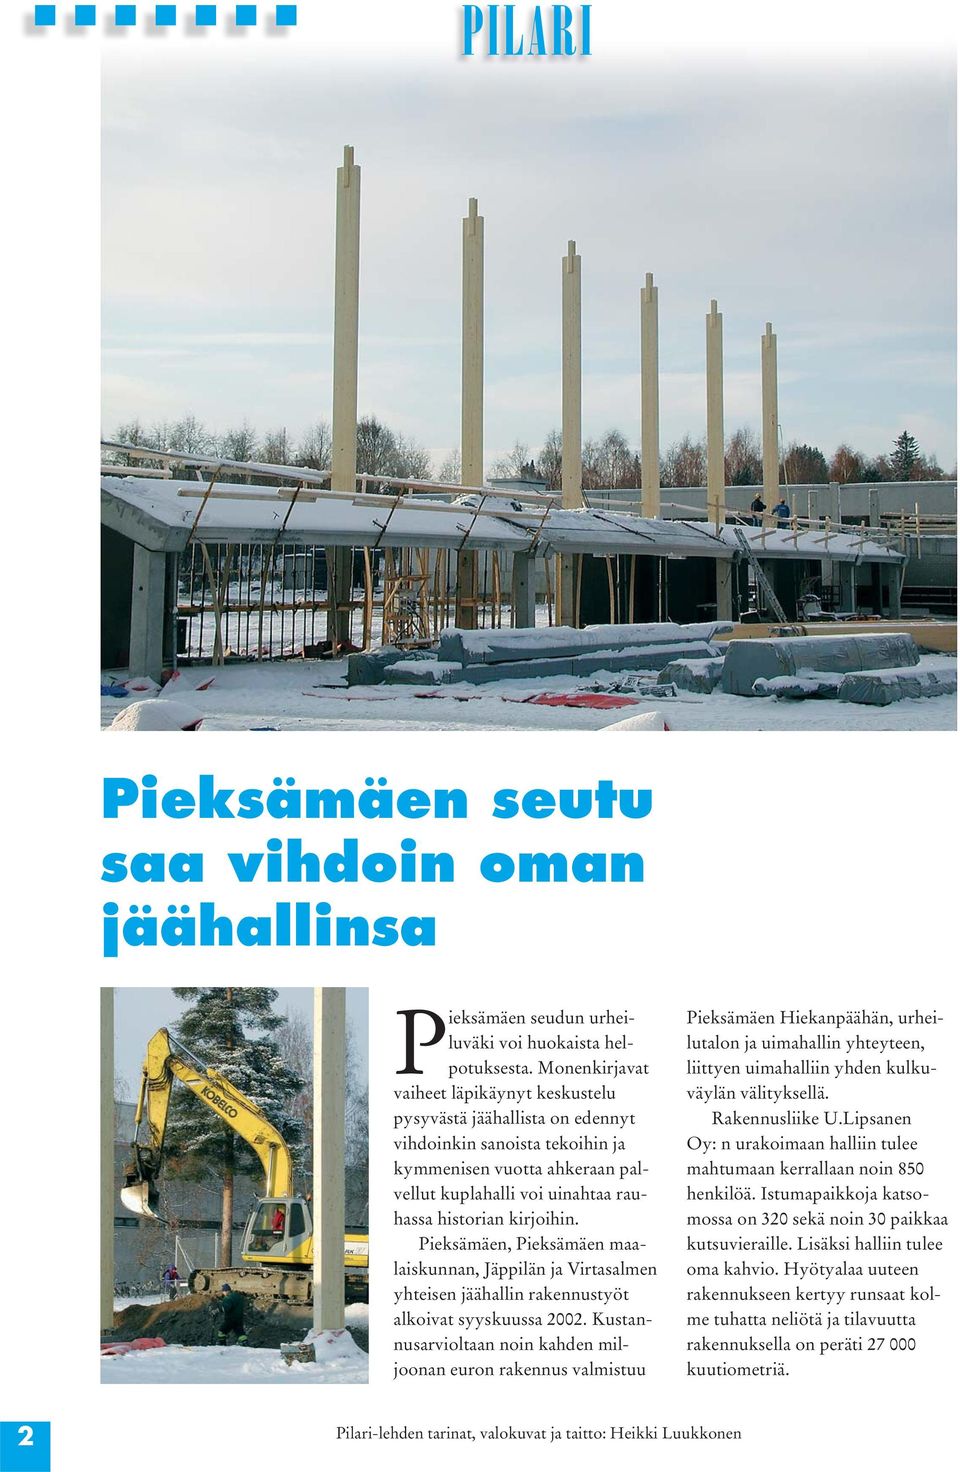 Pieksämäen, Pieksämäen maalaiskunnan, Jäppilän ja Virtasalmen yhteisen jäähallin rakennustyöt alkoivat syyskuussa 2002.